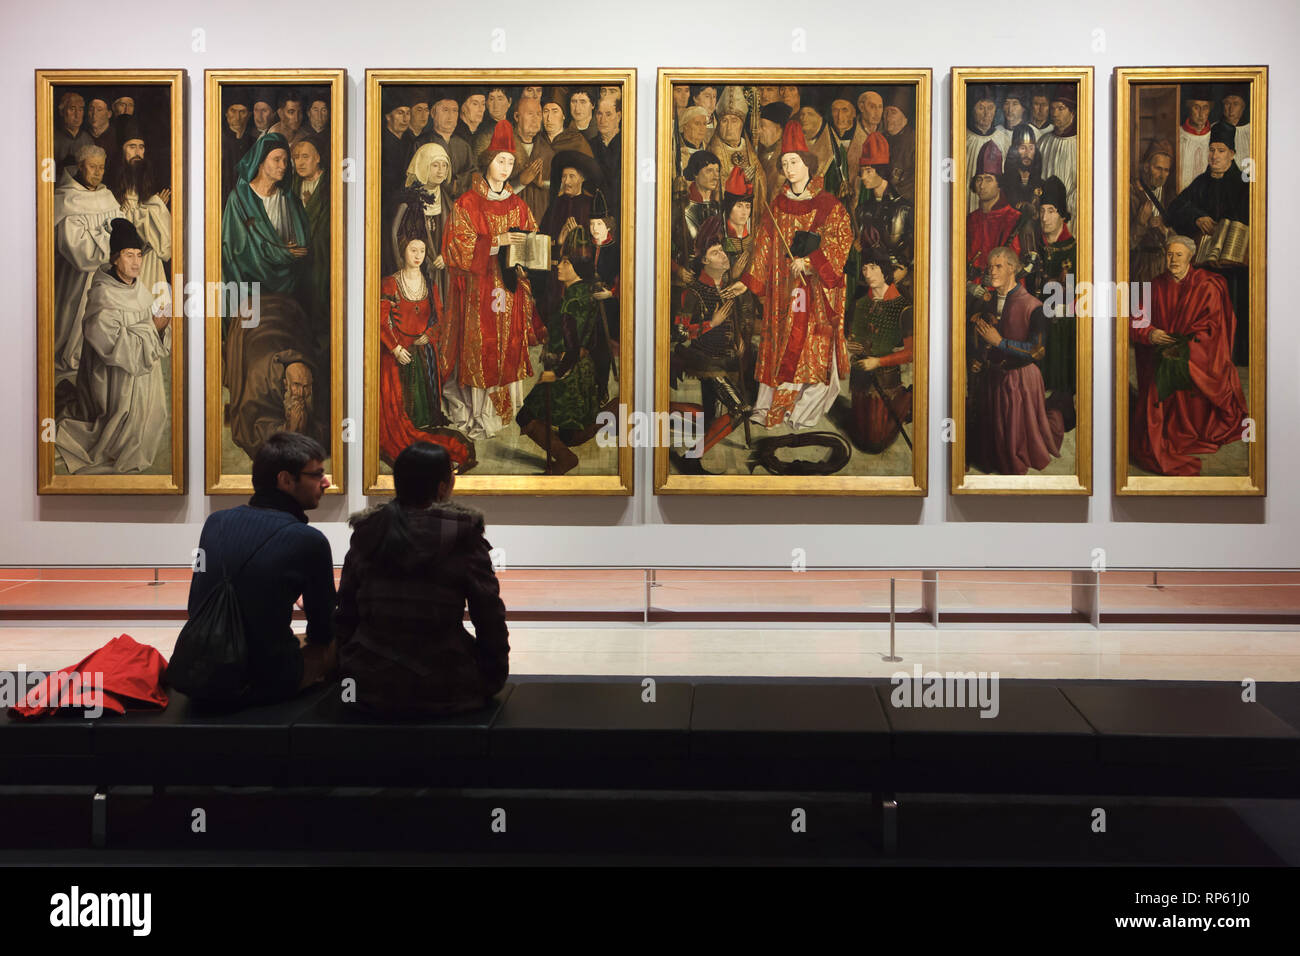 Visiteurs en face des panneaux de Saint Vincent par peintre de la cour portugaise Nuno Gonçalves (1470) affiché dans le Musée National d'Art Ancien (Museu Nacional de Arte Antiga) à Lisbonne, Portugal. Banque D'Images